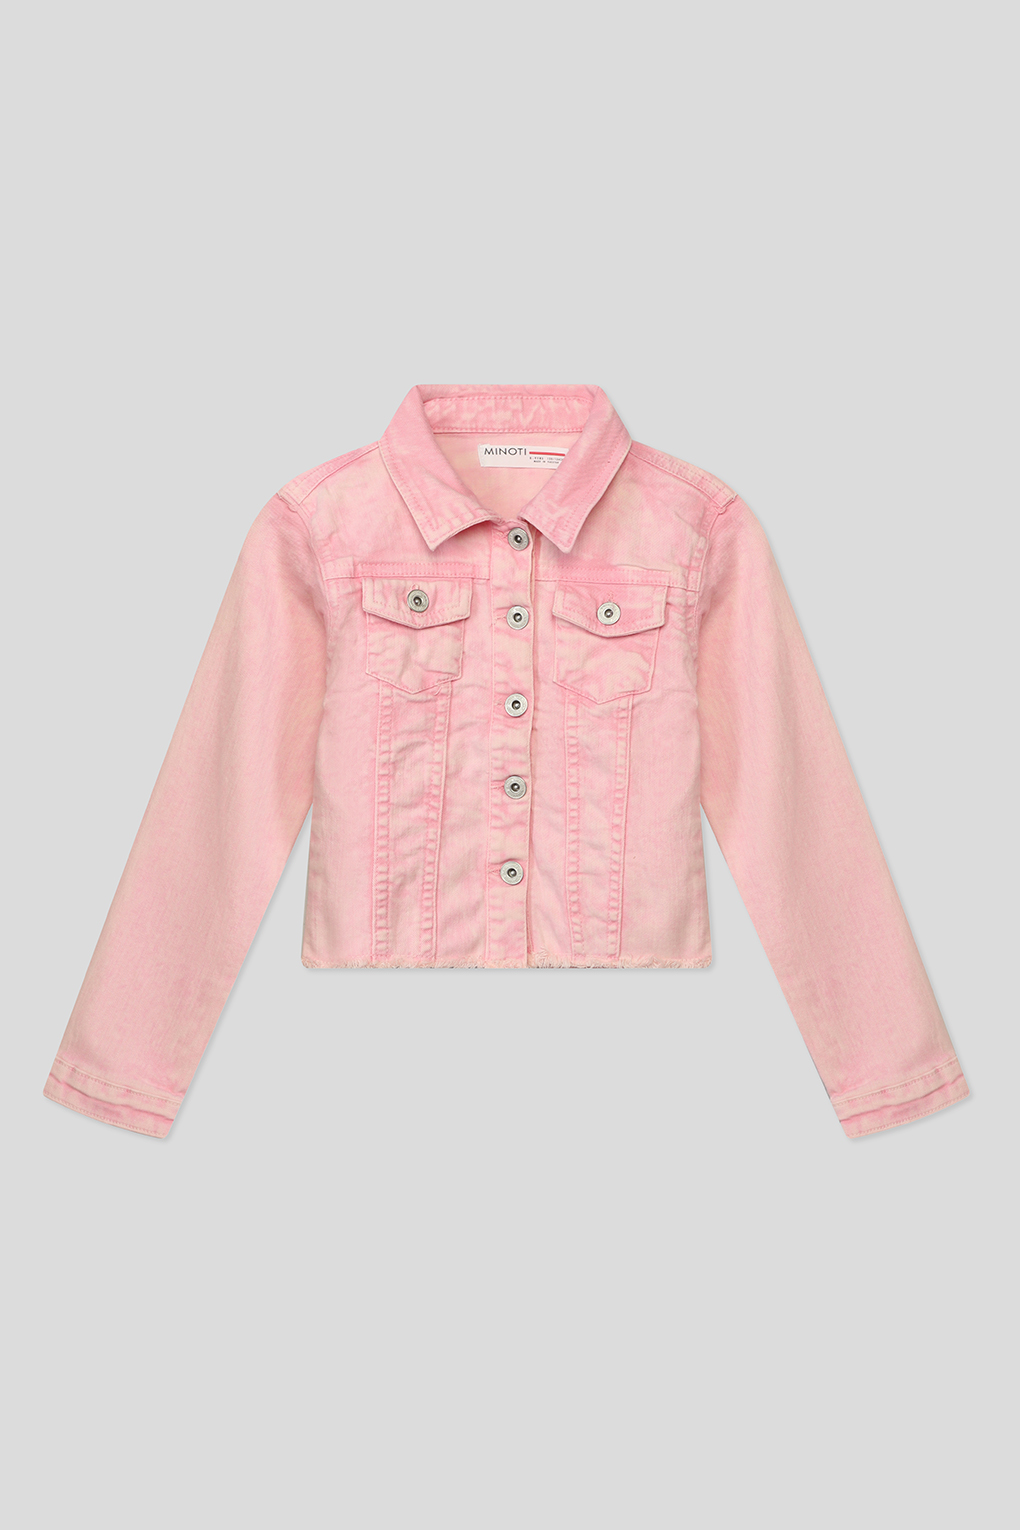 Куртка джинсовая MINOTI SOFT5, розовый, 11-12